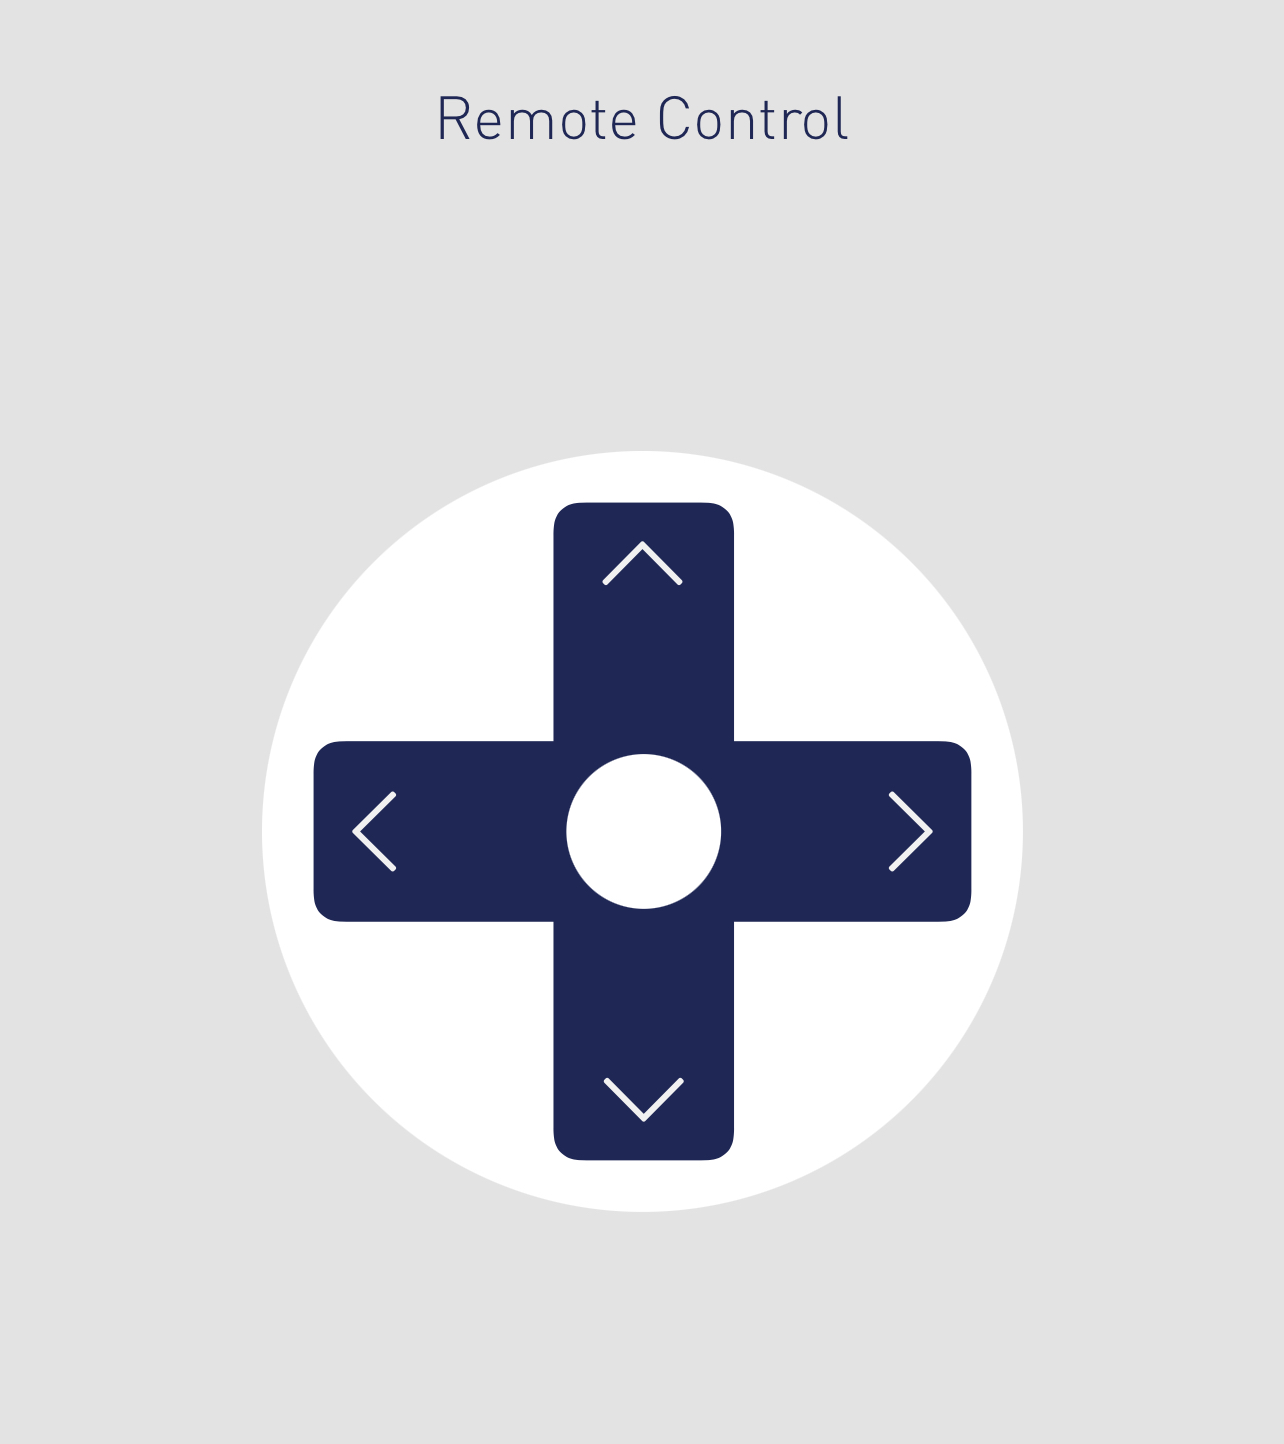 a screenshot of a remote control